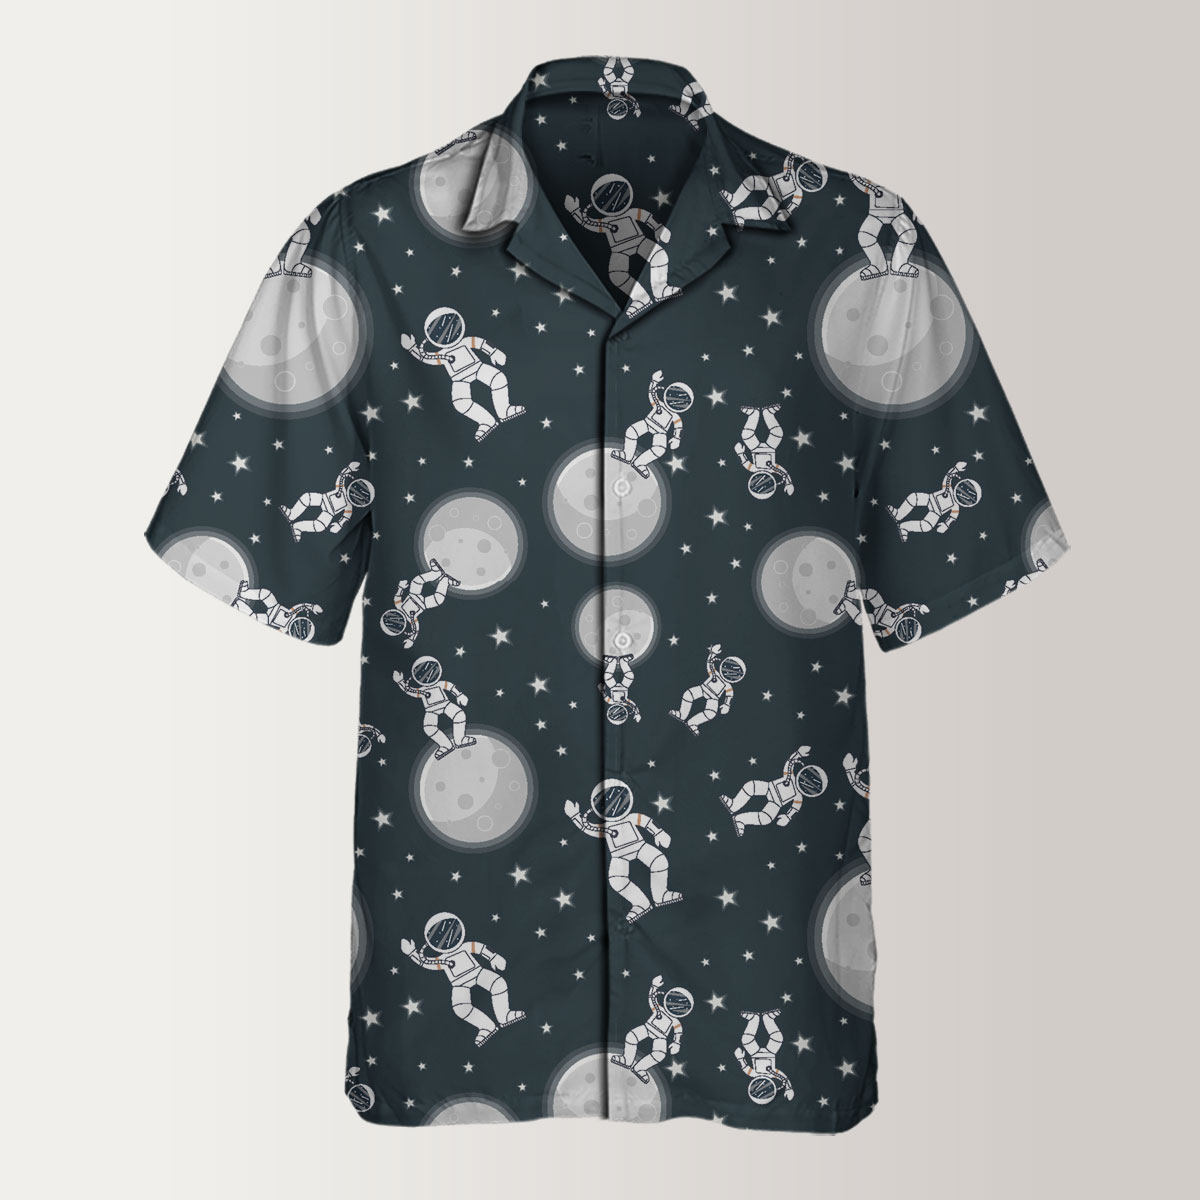 Astronaut On The Moon Hawaiian Shirt